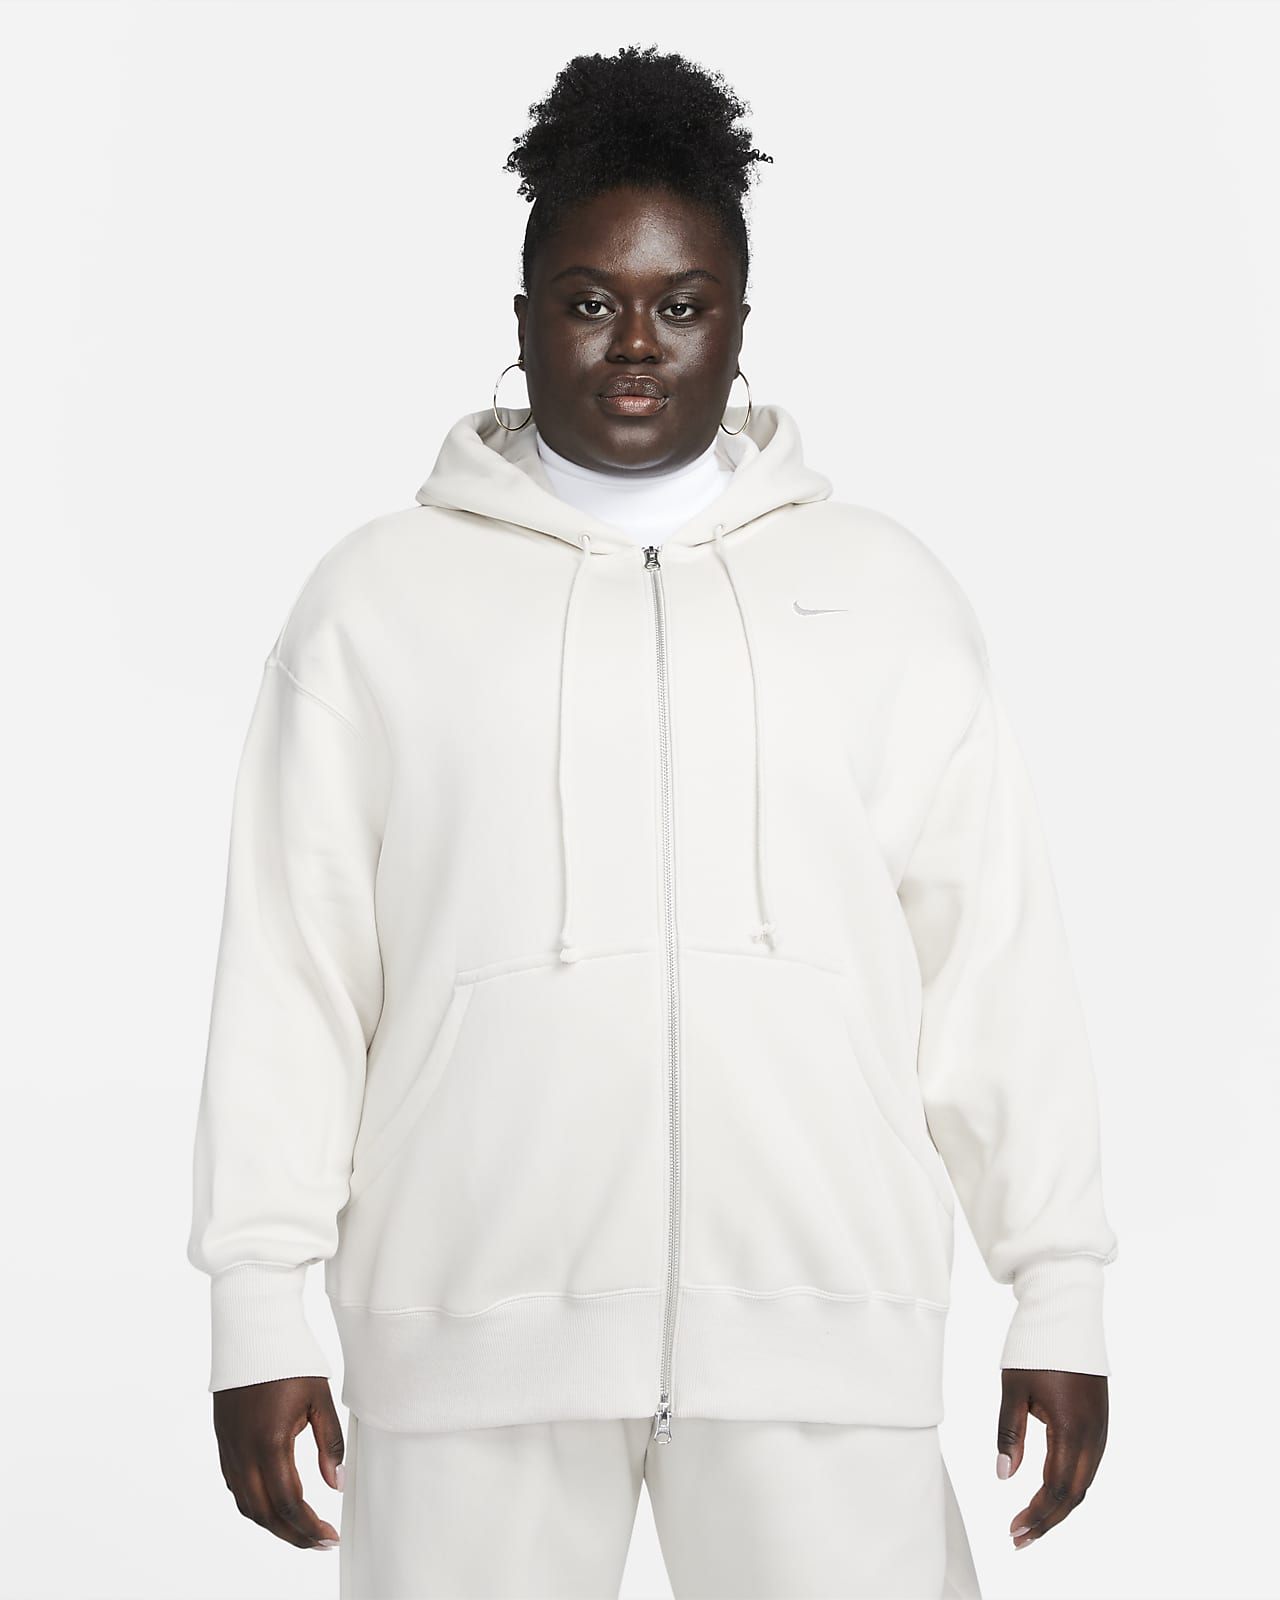 Γυναικεία μπλούζα με κουκούλα και φερμουάρ σε όλο το μήκος σε φαρδιά γραμμή Nike Sportswear Phoenix Fleece (μεγάλα μεγέθη)